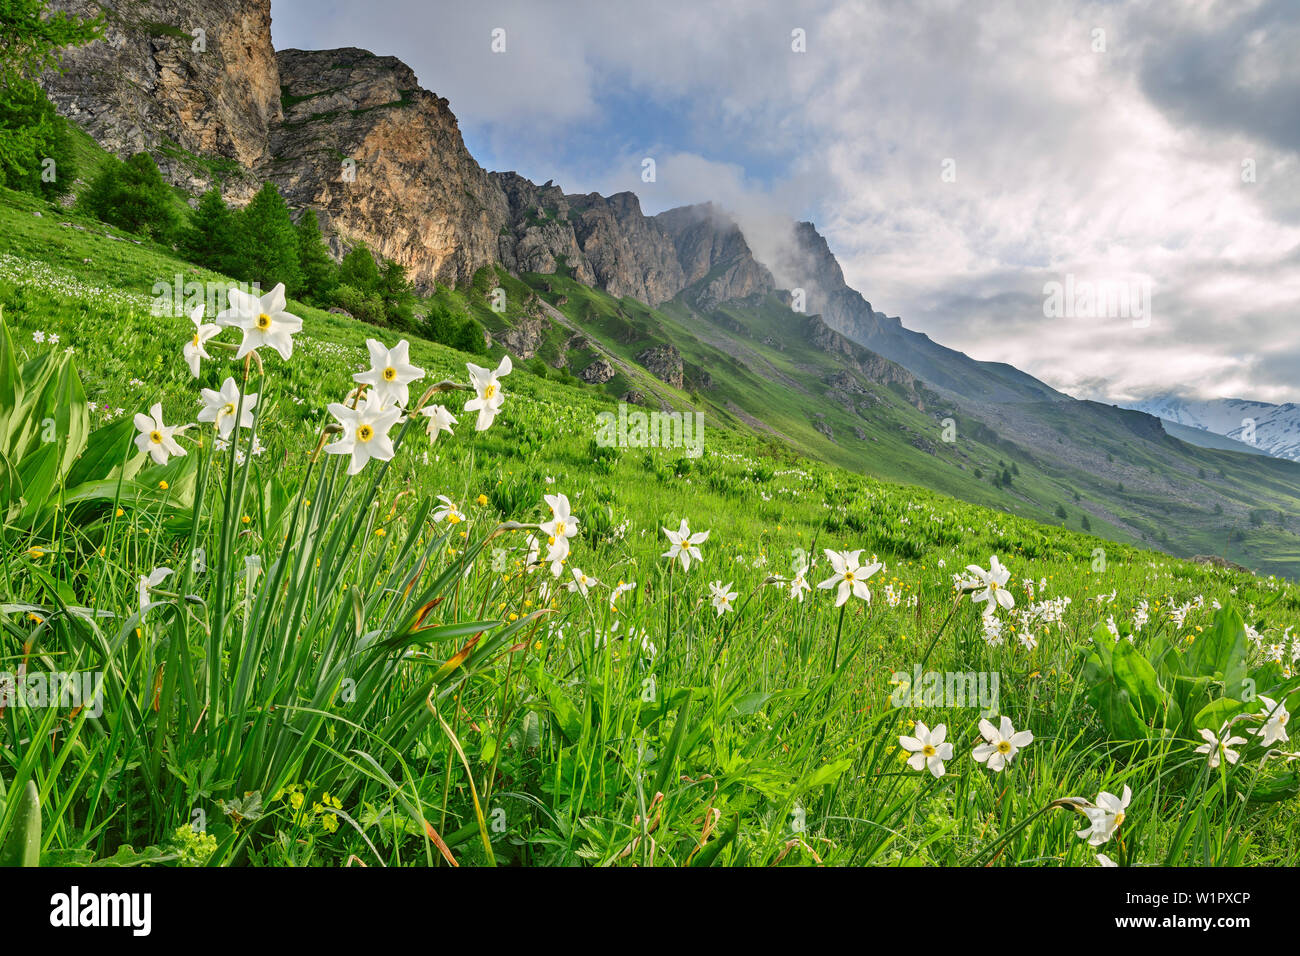 Daffodil in fiore con Alpi Cozie in background, narcisi, Val Varaita, Alpi Cozie, Piemonte, Italia Foto Stock